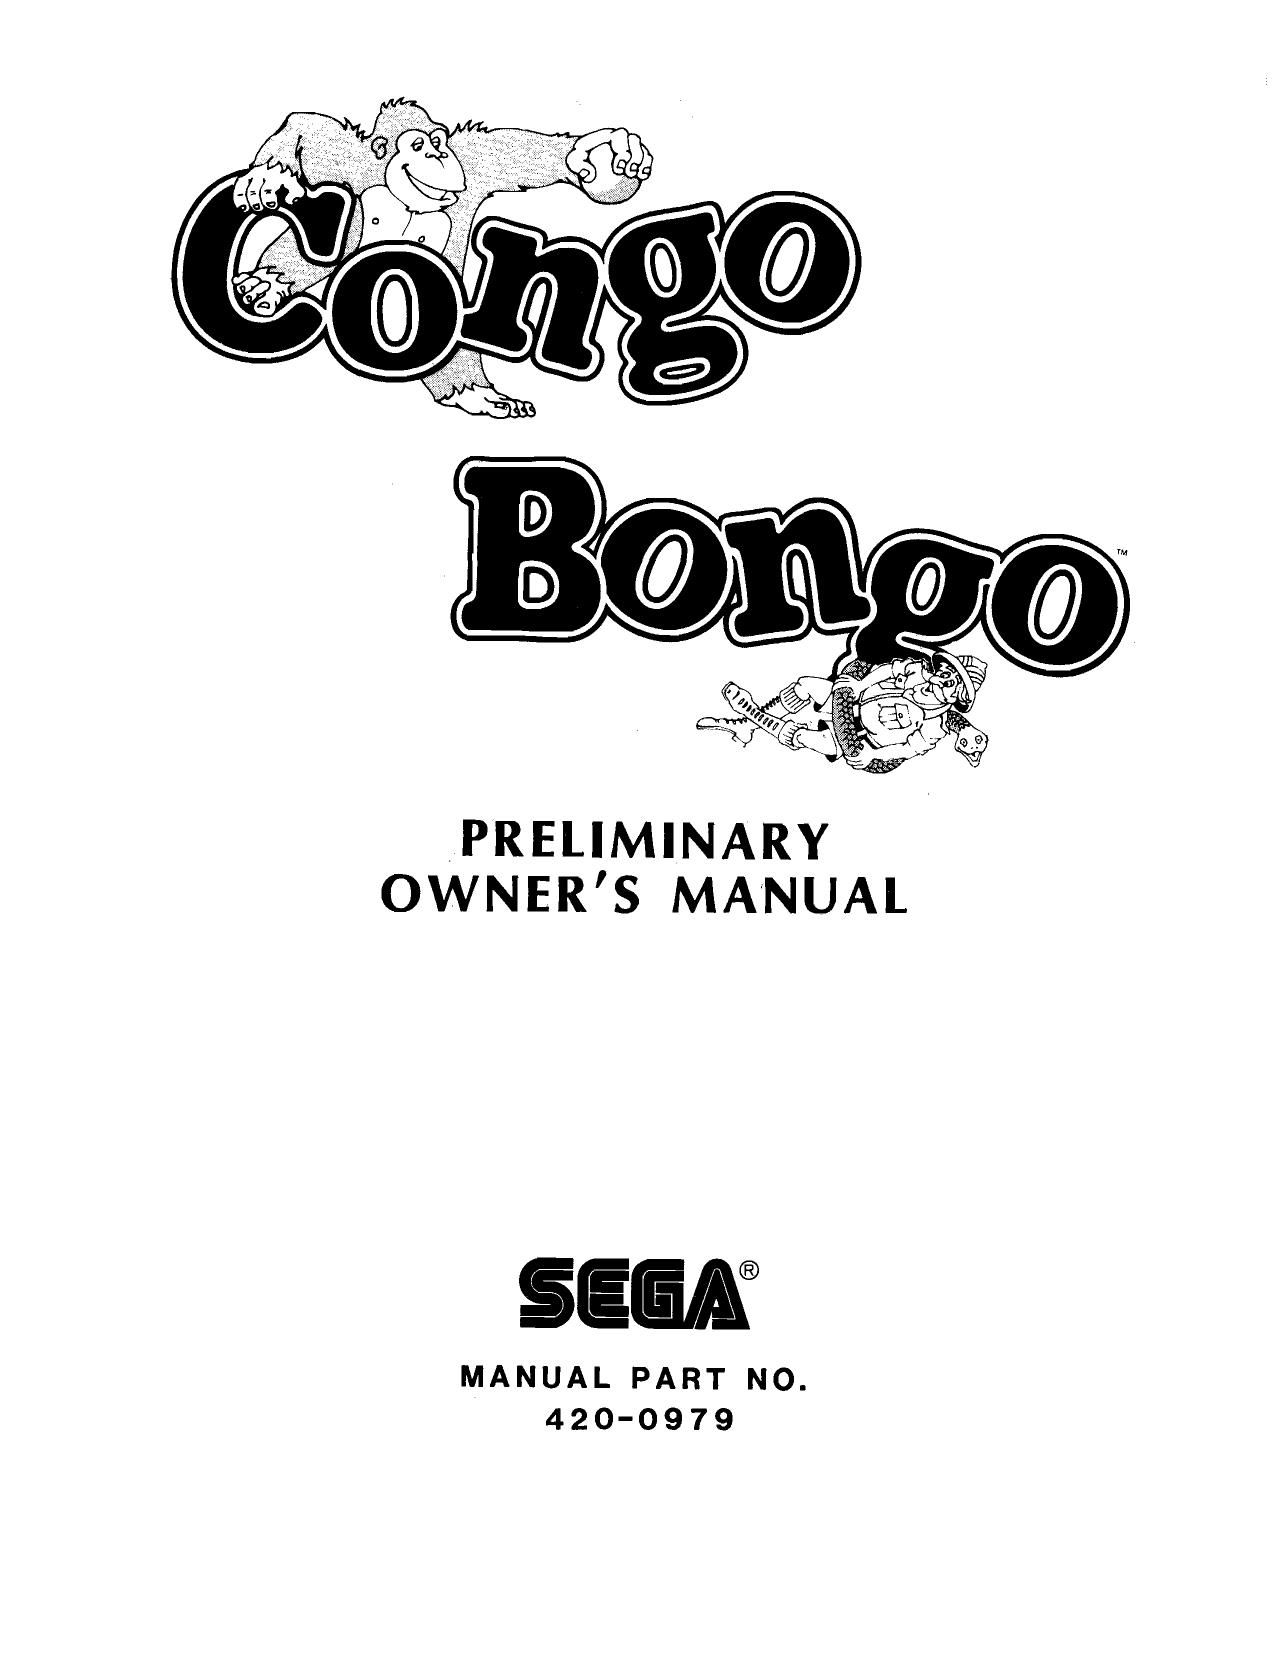 Congo Bongo (Prelimanary Manual)